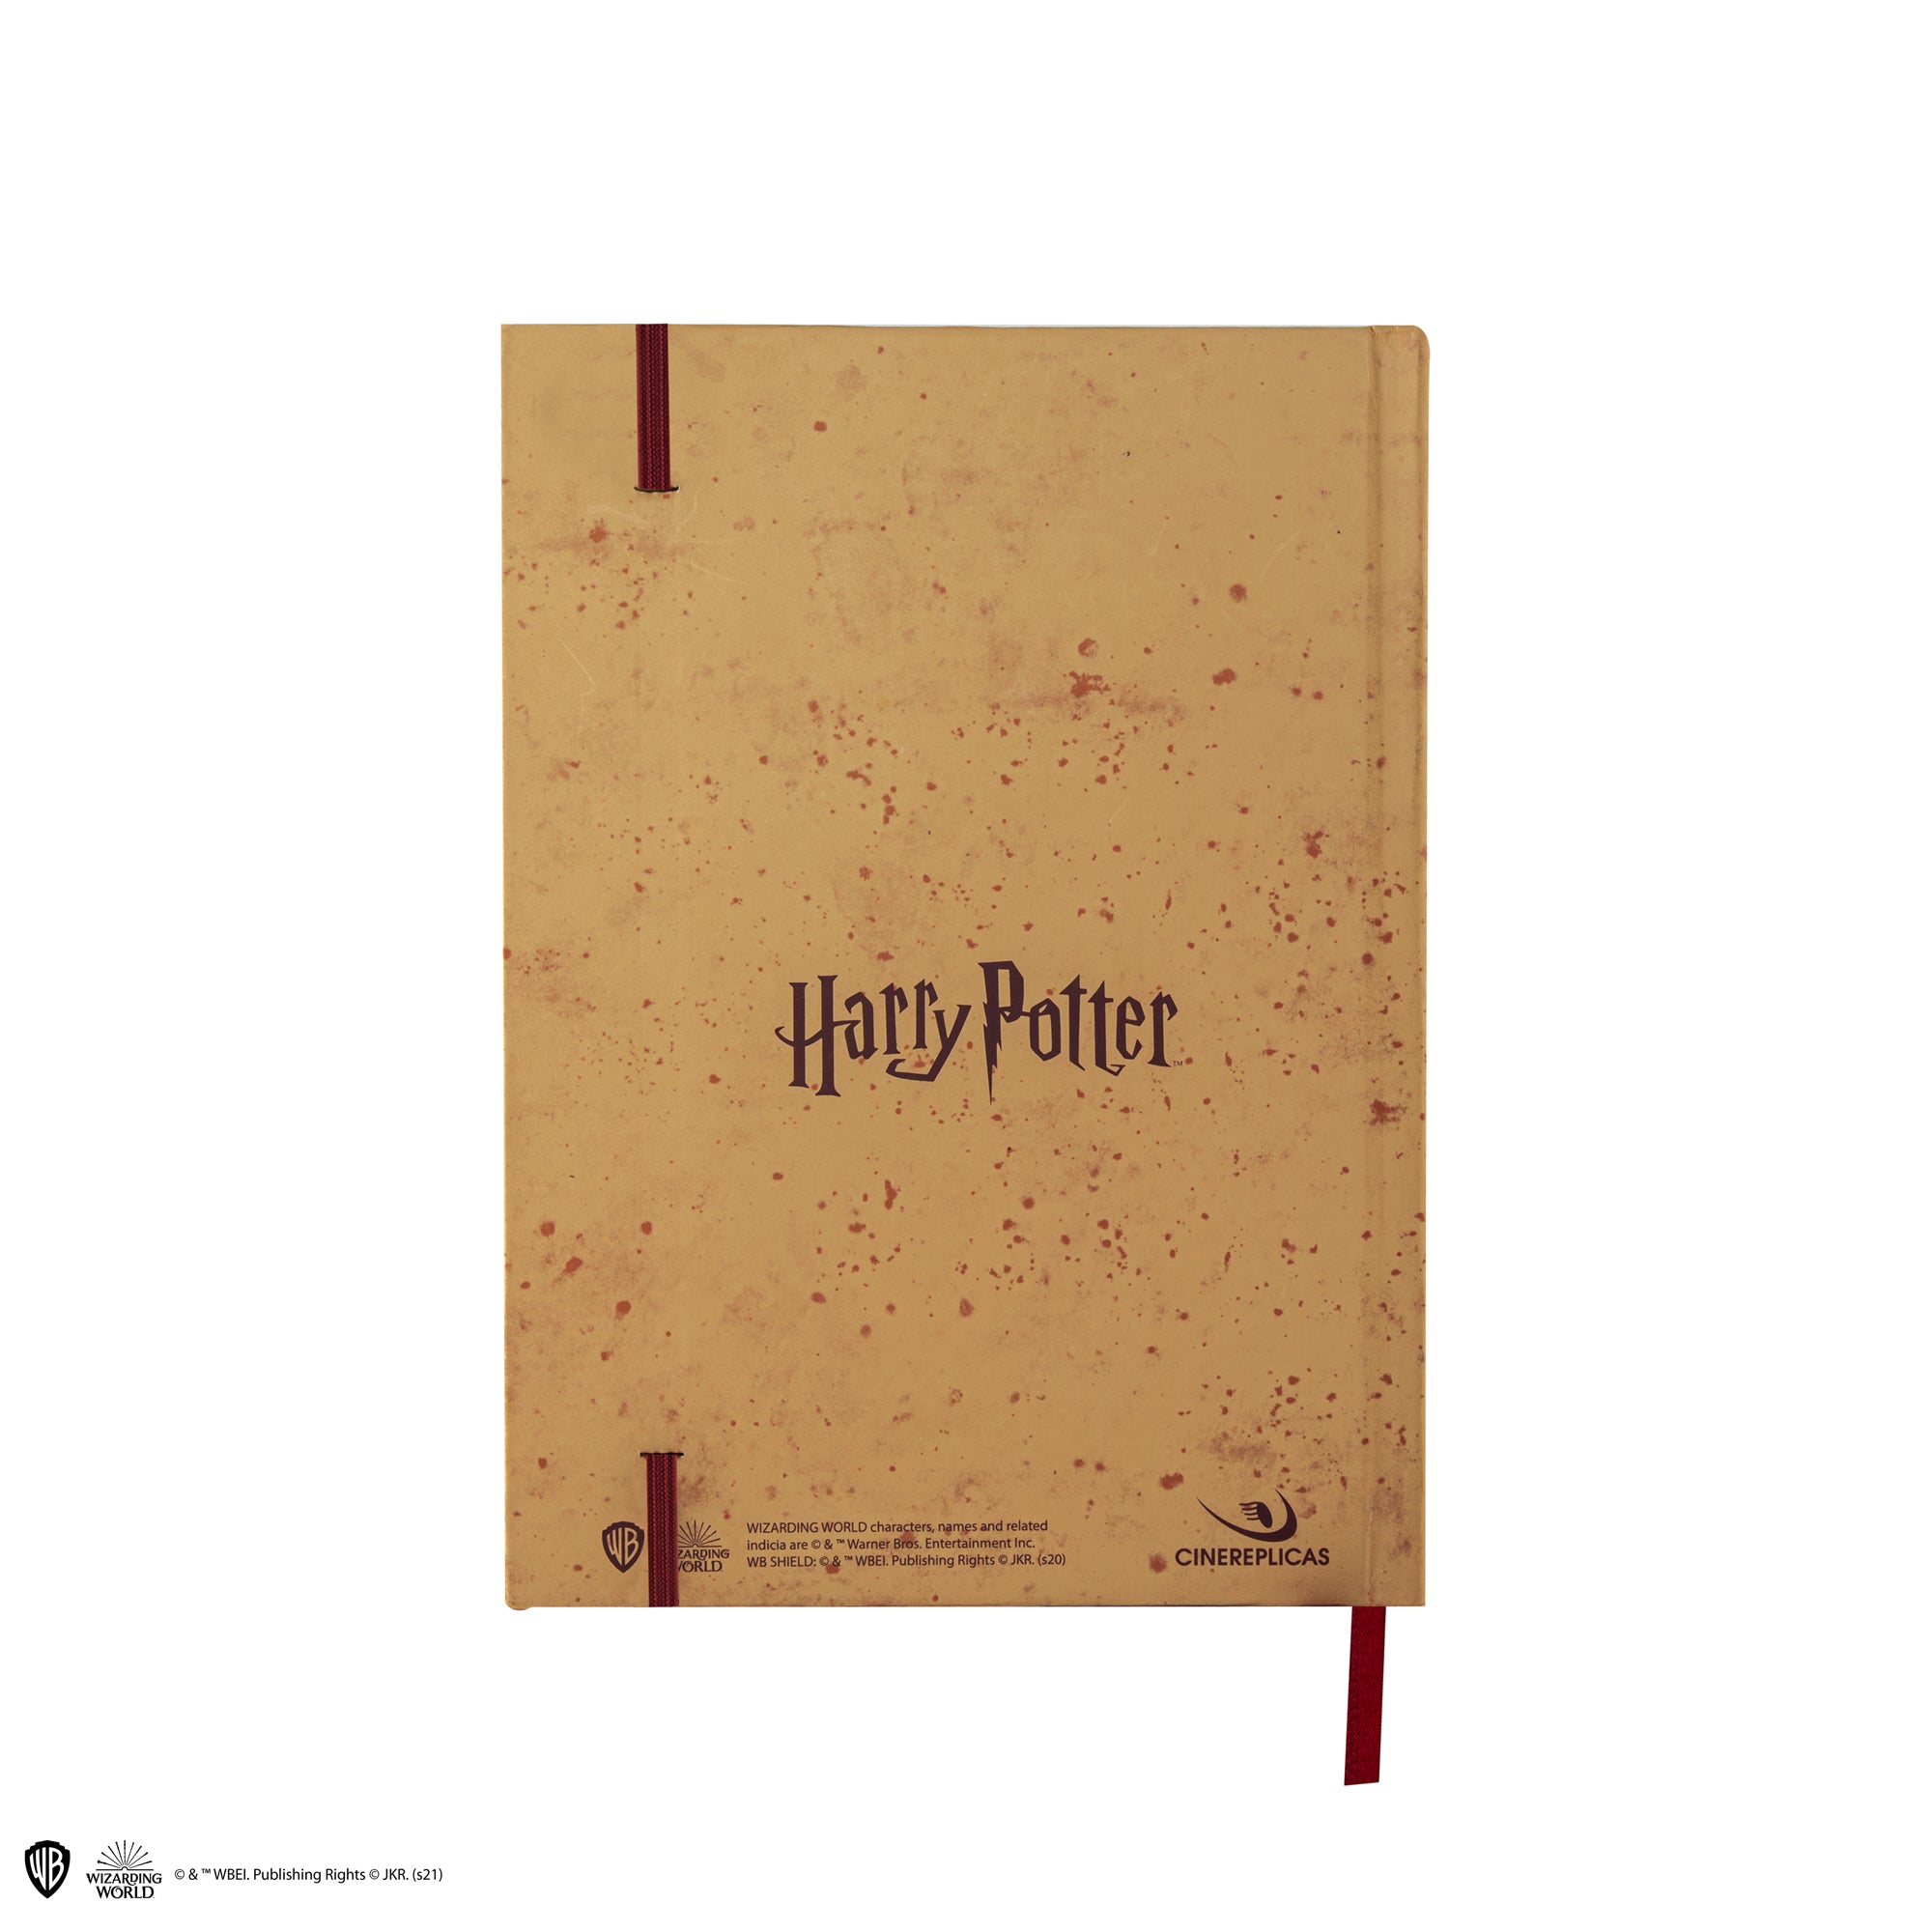 Carnet avec carte du Maraudeur, Harry Potter